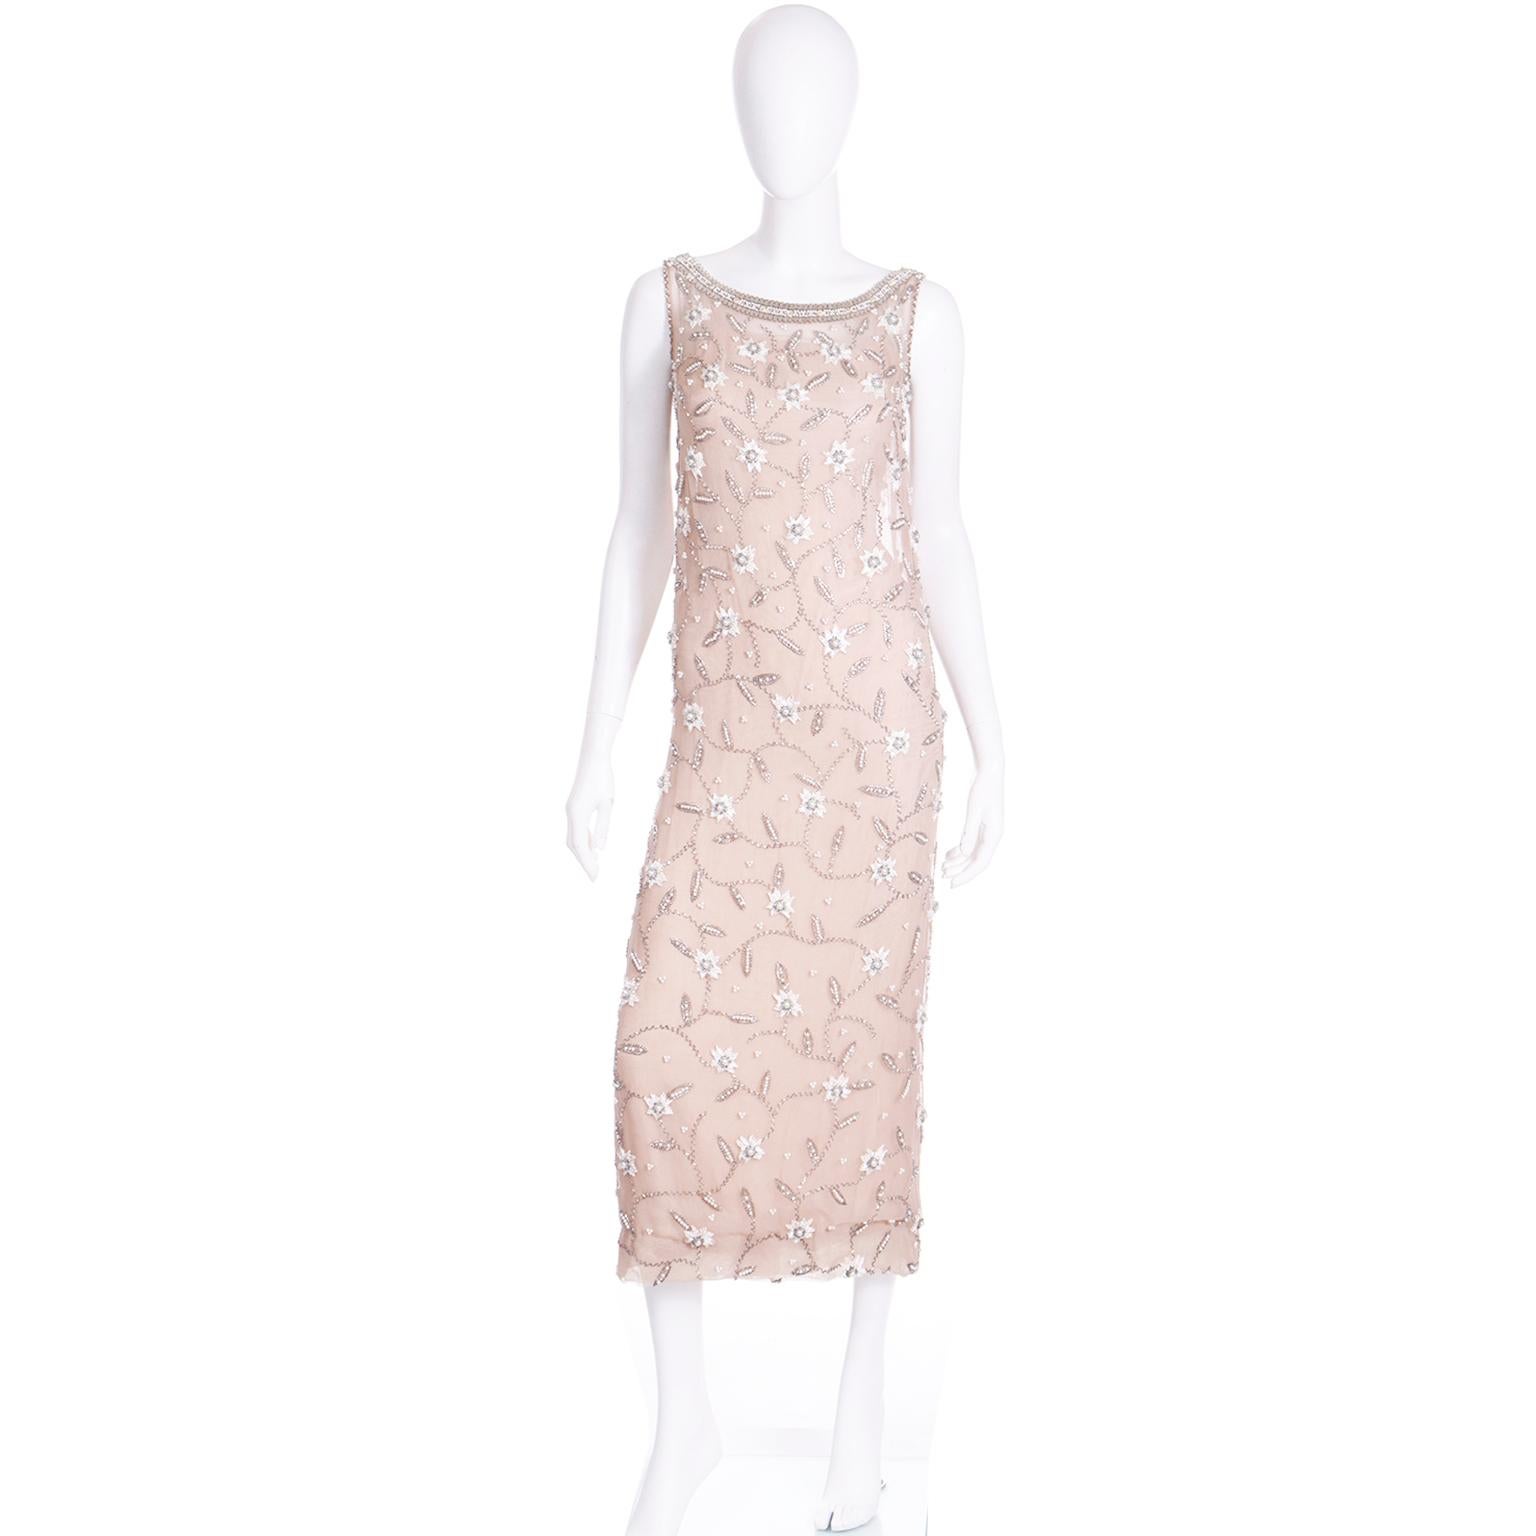 Dieses elegante Abendkleid wurde in den 1970er Jahren von Victoria Royal entworfen und bei Robinson's in Kalifornien verkauft. Die äußere Schicht des Kleides besteht aus einem feinen, champagnerfarbenen Netzstoff, der mit Perlen, Stickereien,